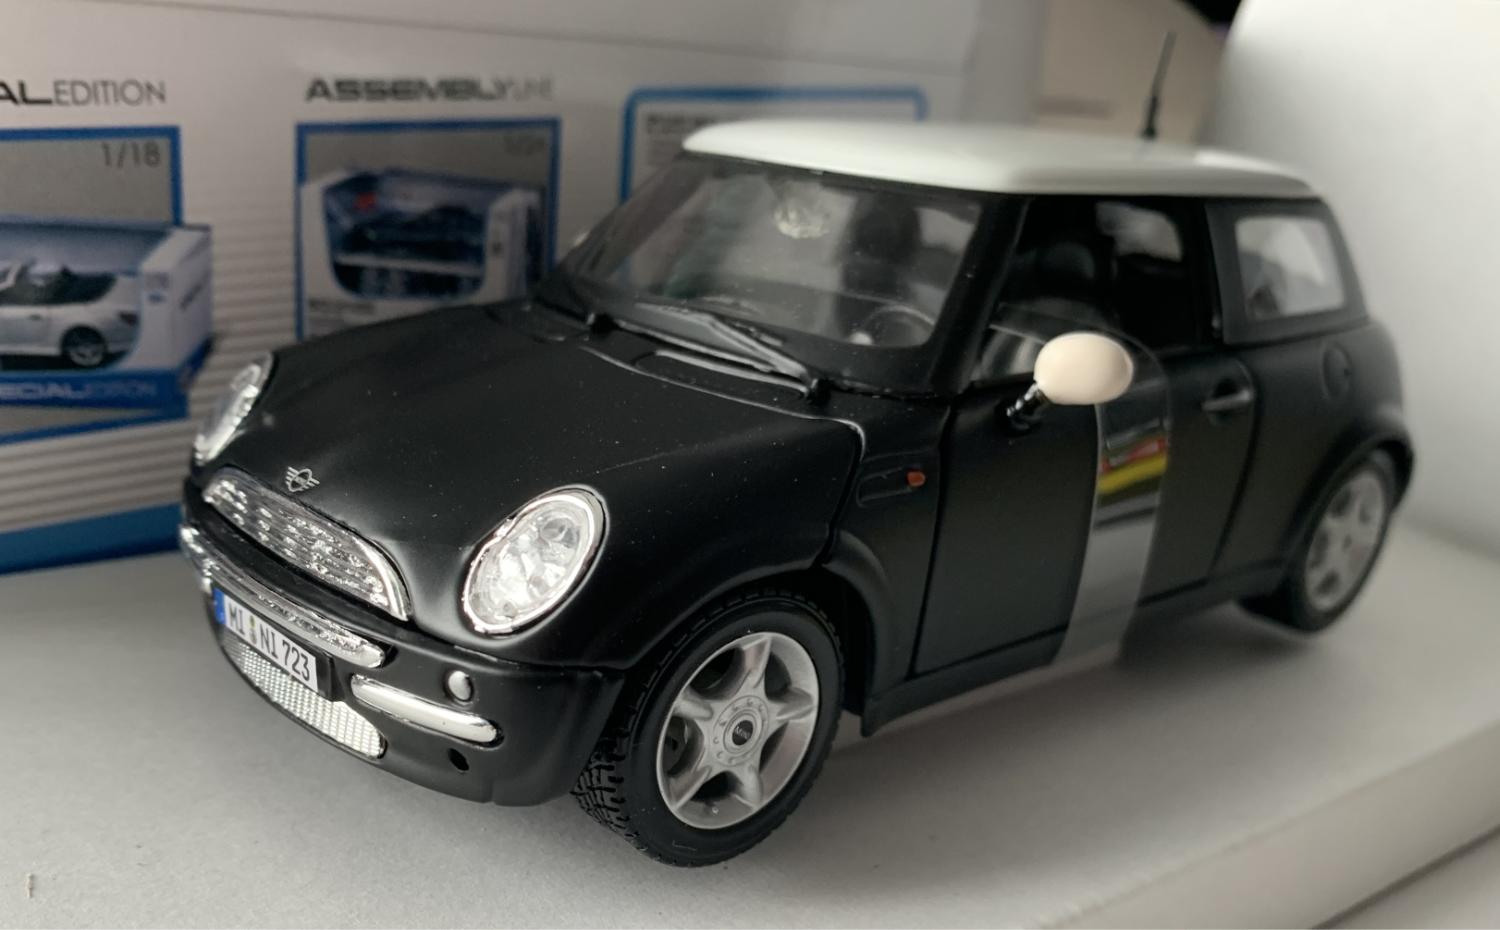 Mini Cooper in matt black 1:24 scale model from Maisto